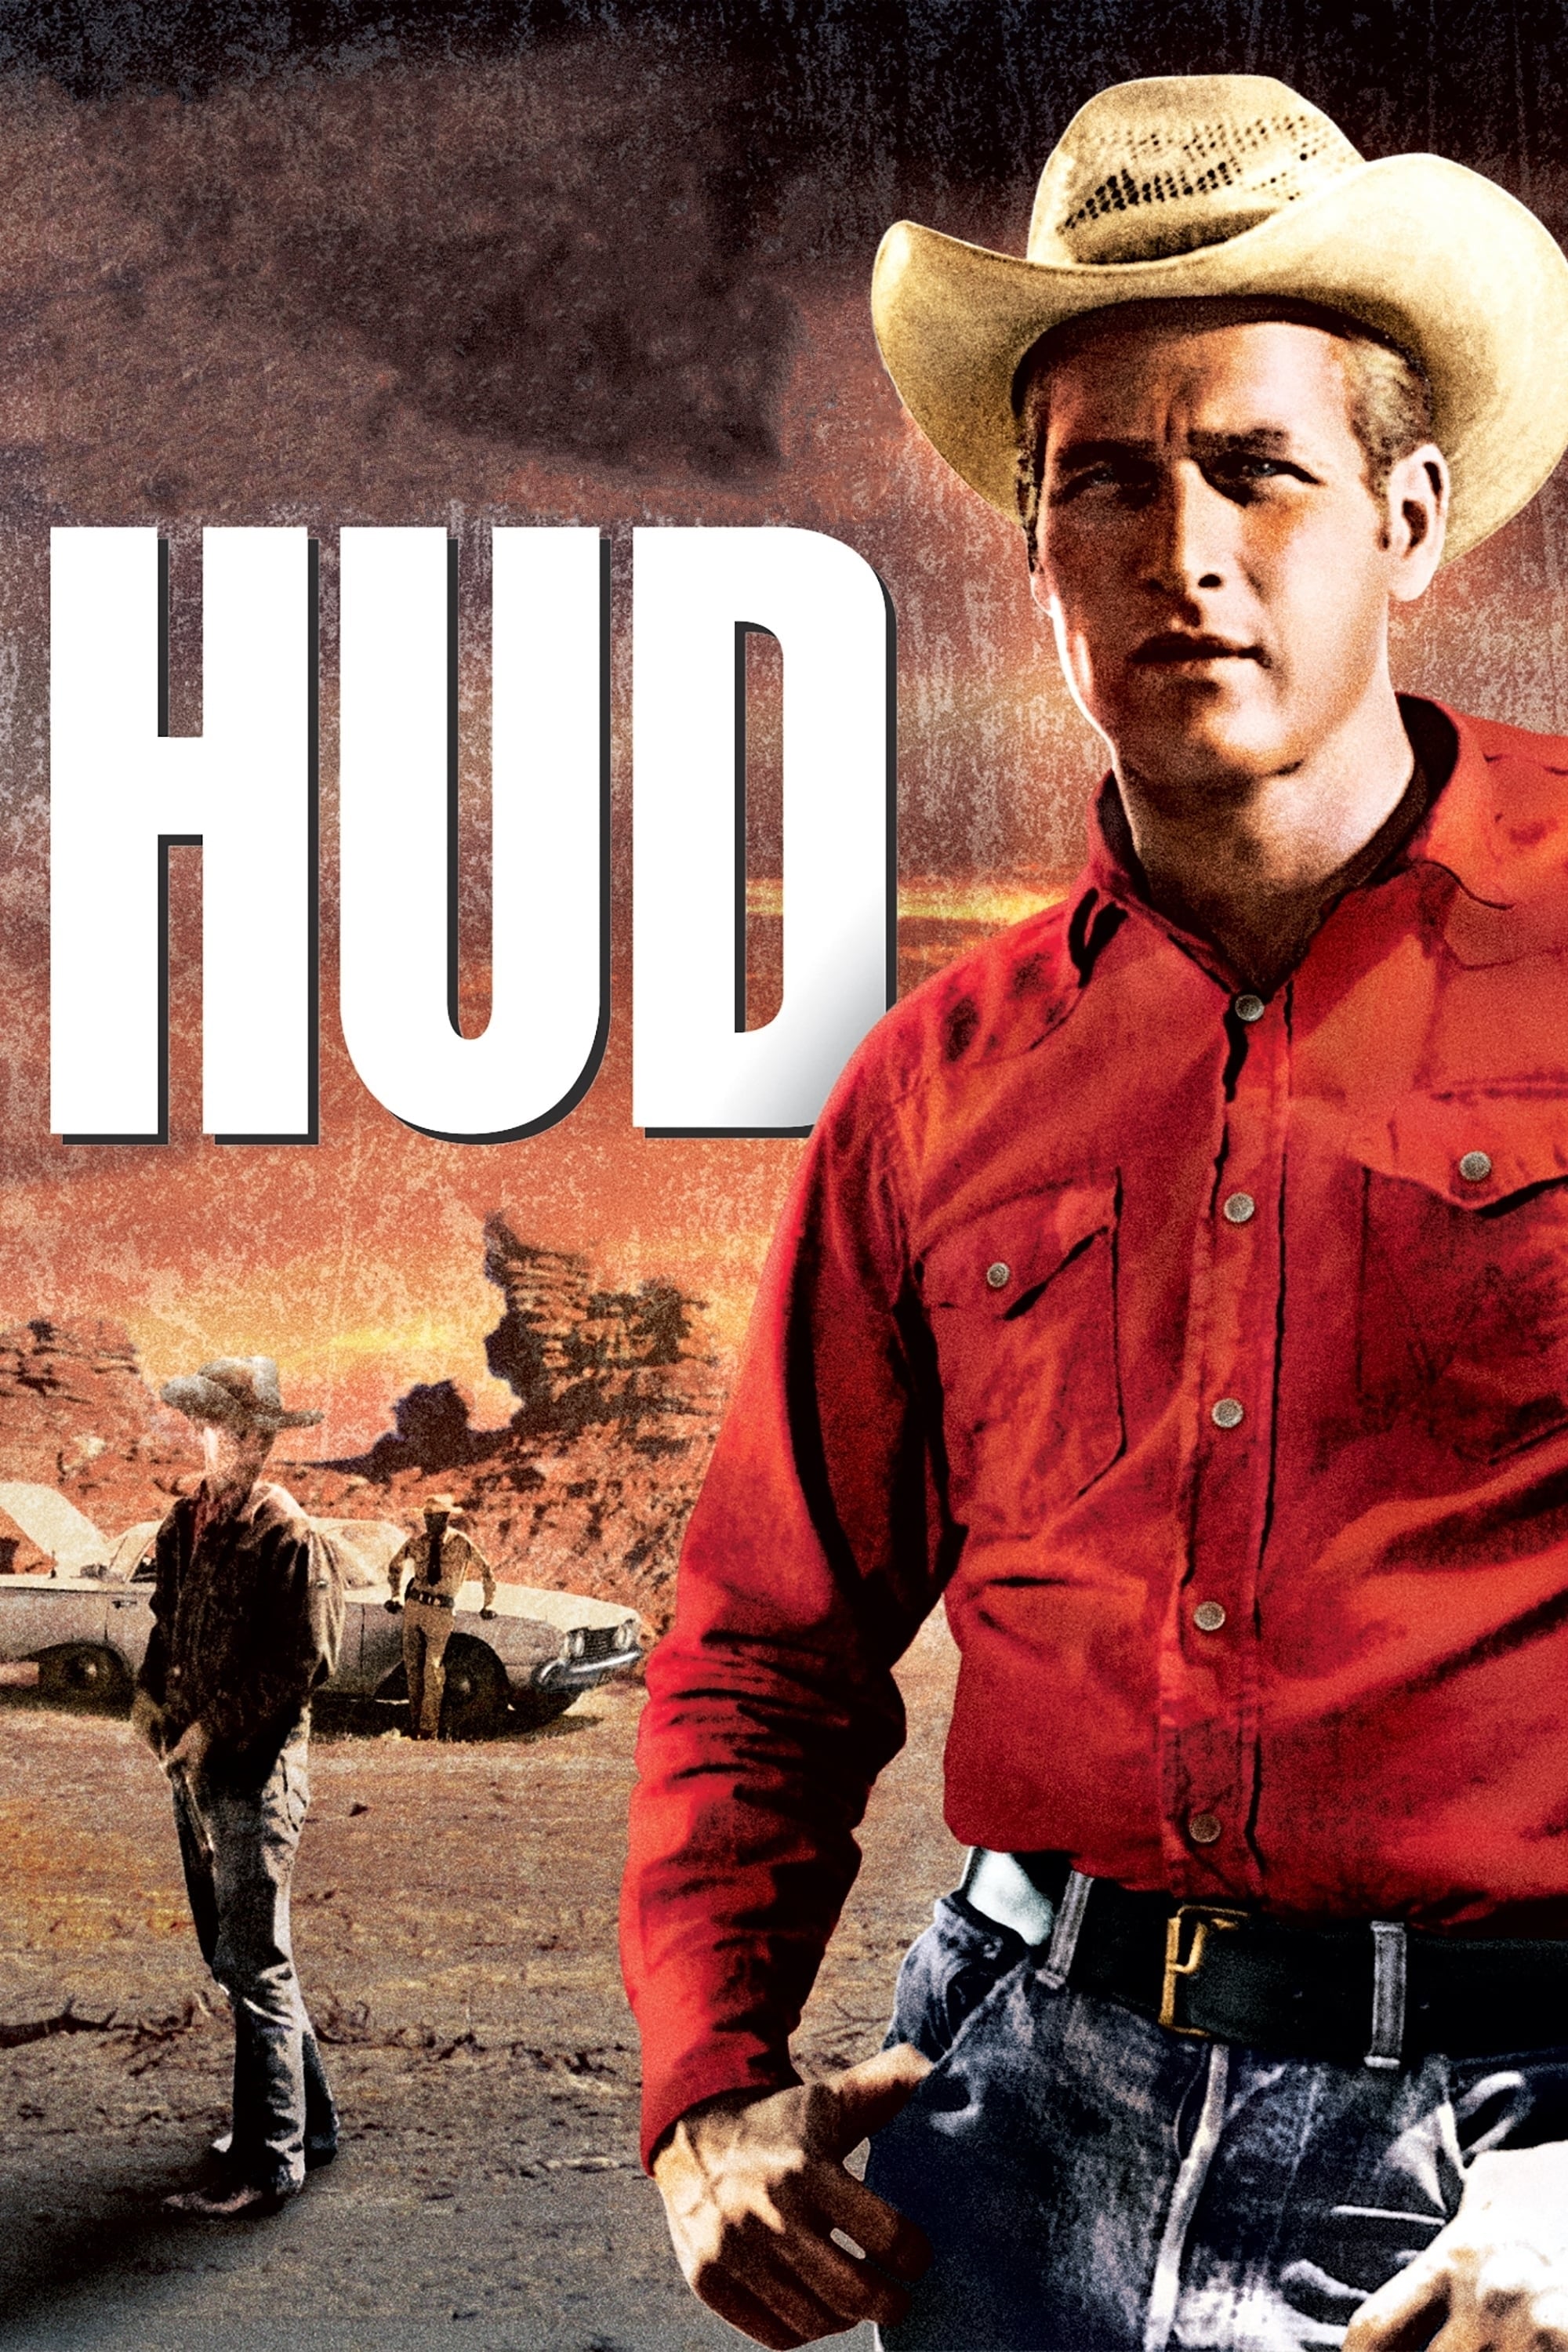 Hud (1963)